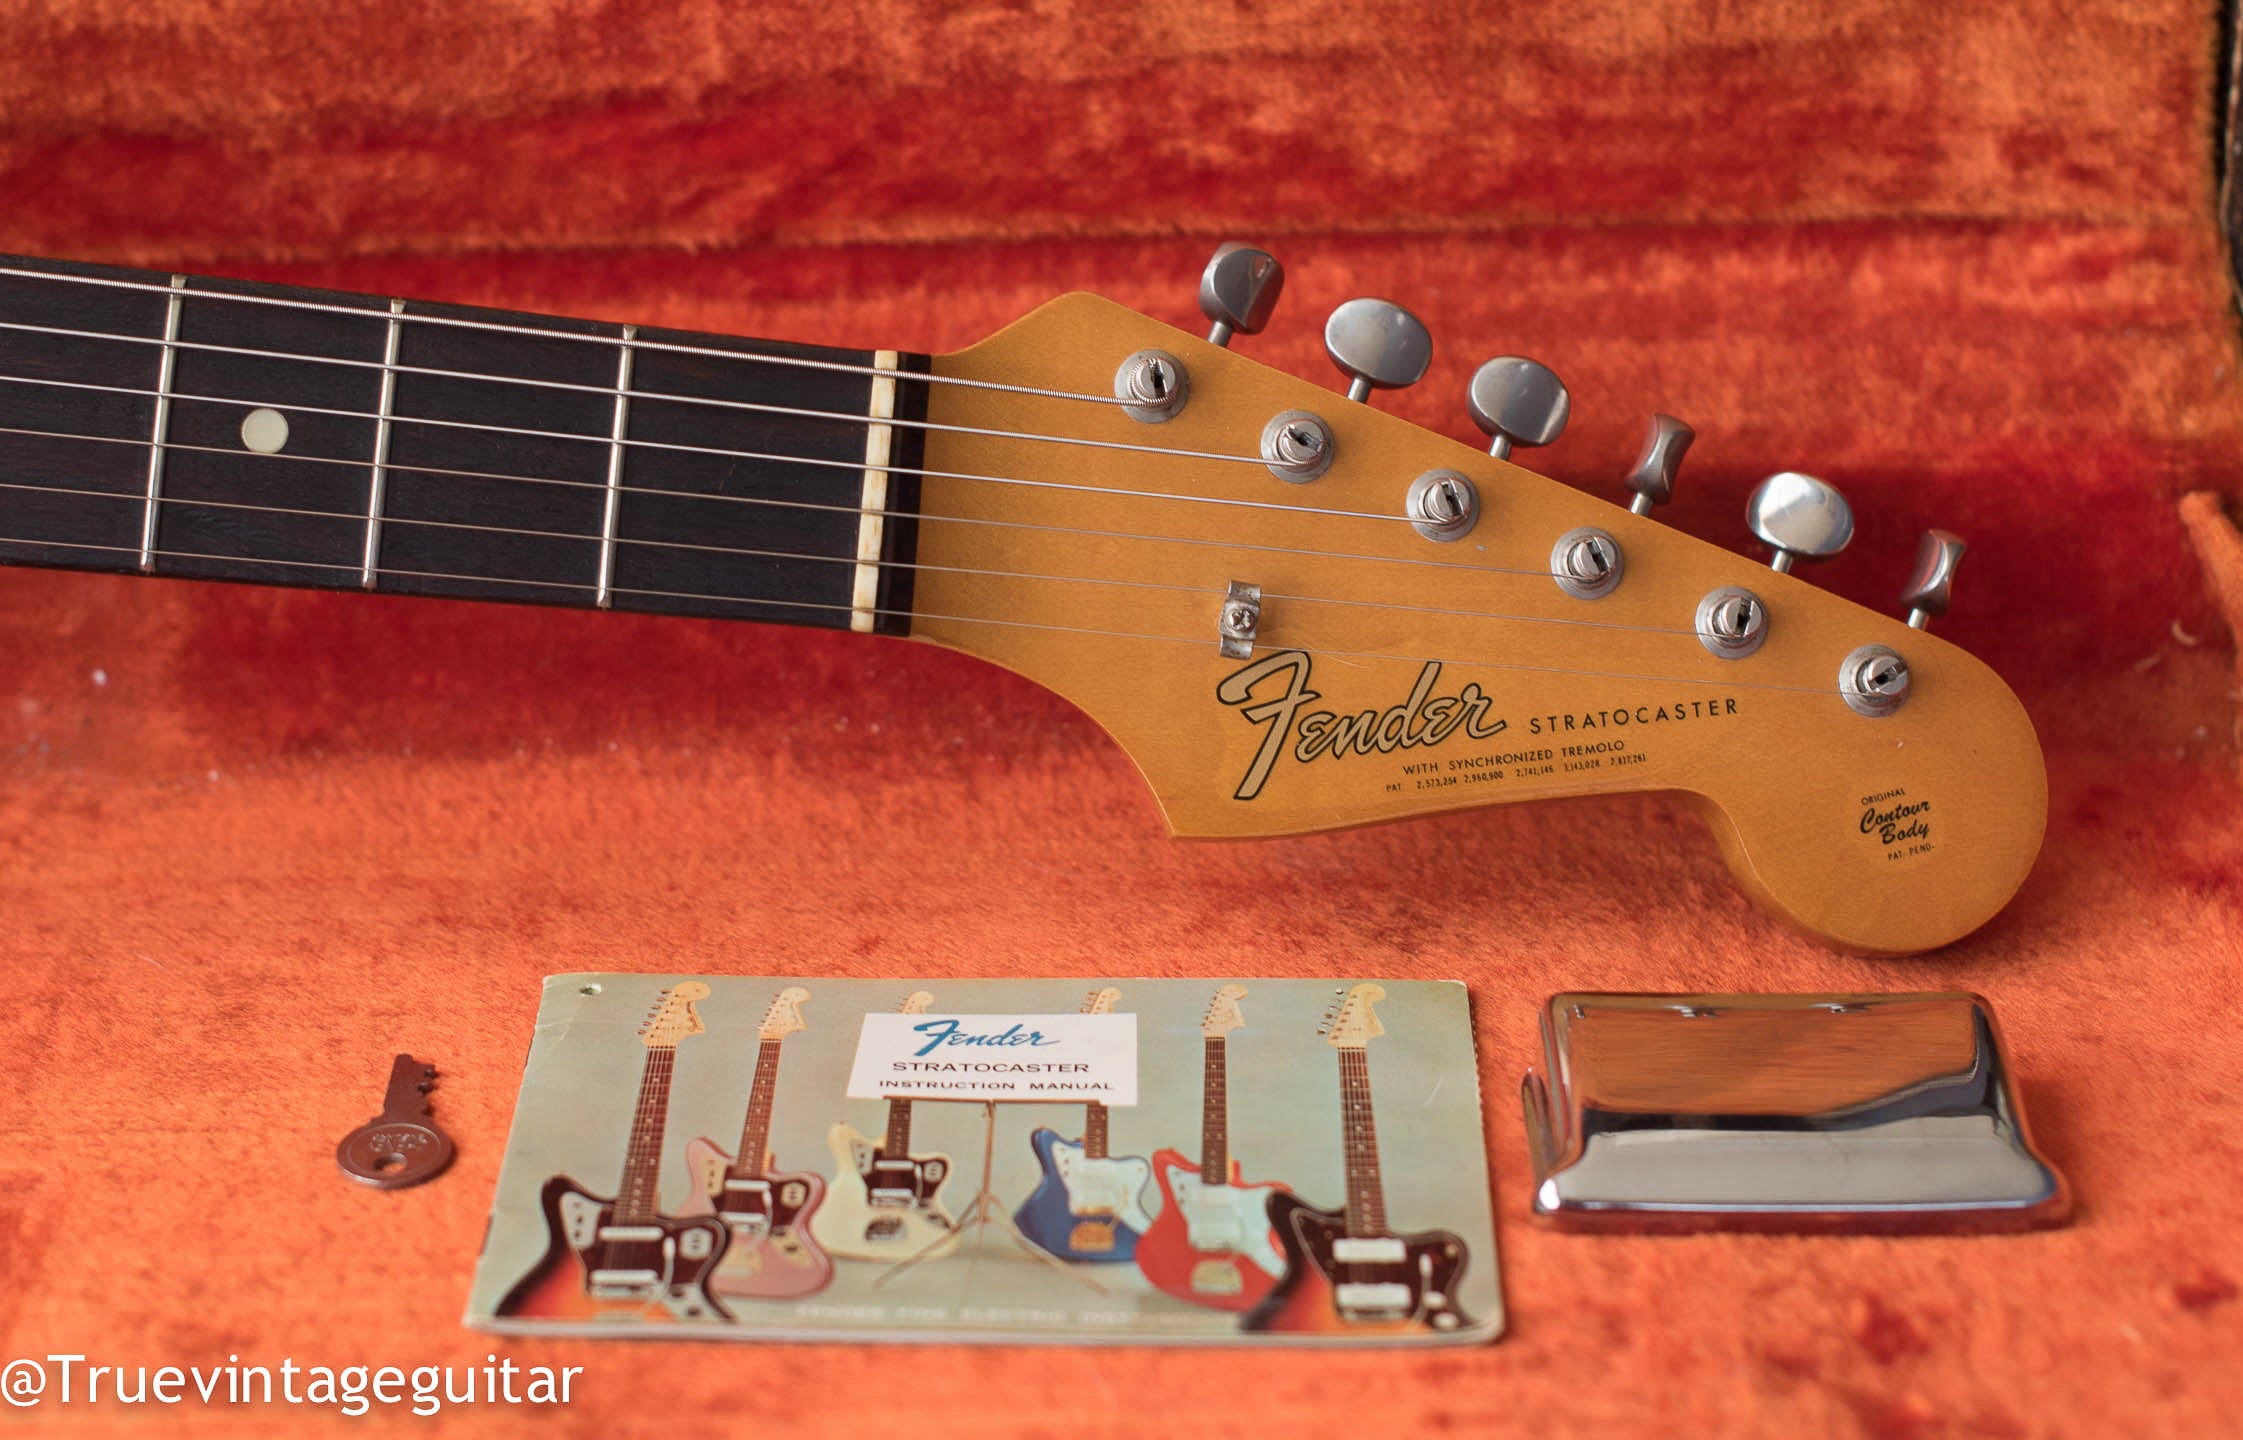 1965 Fender Stratocaster headstock